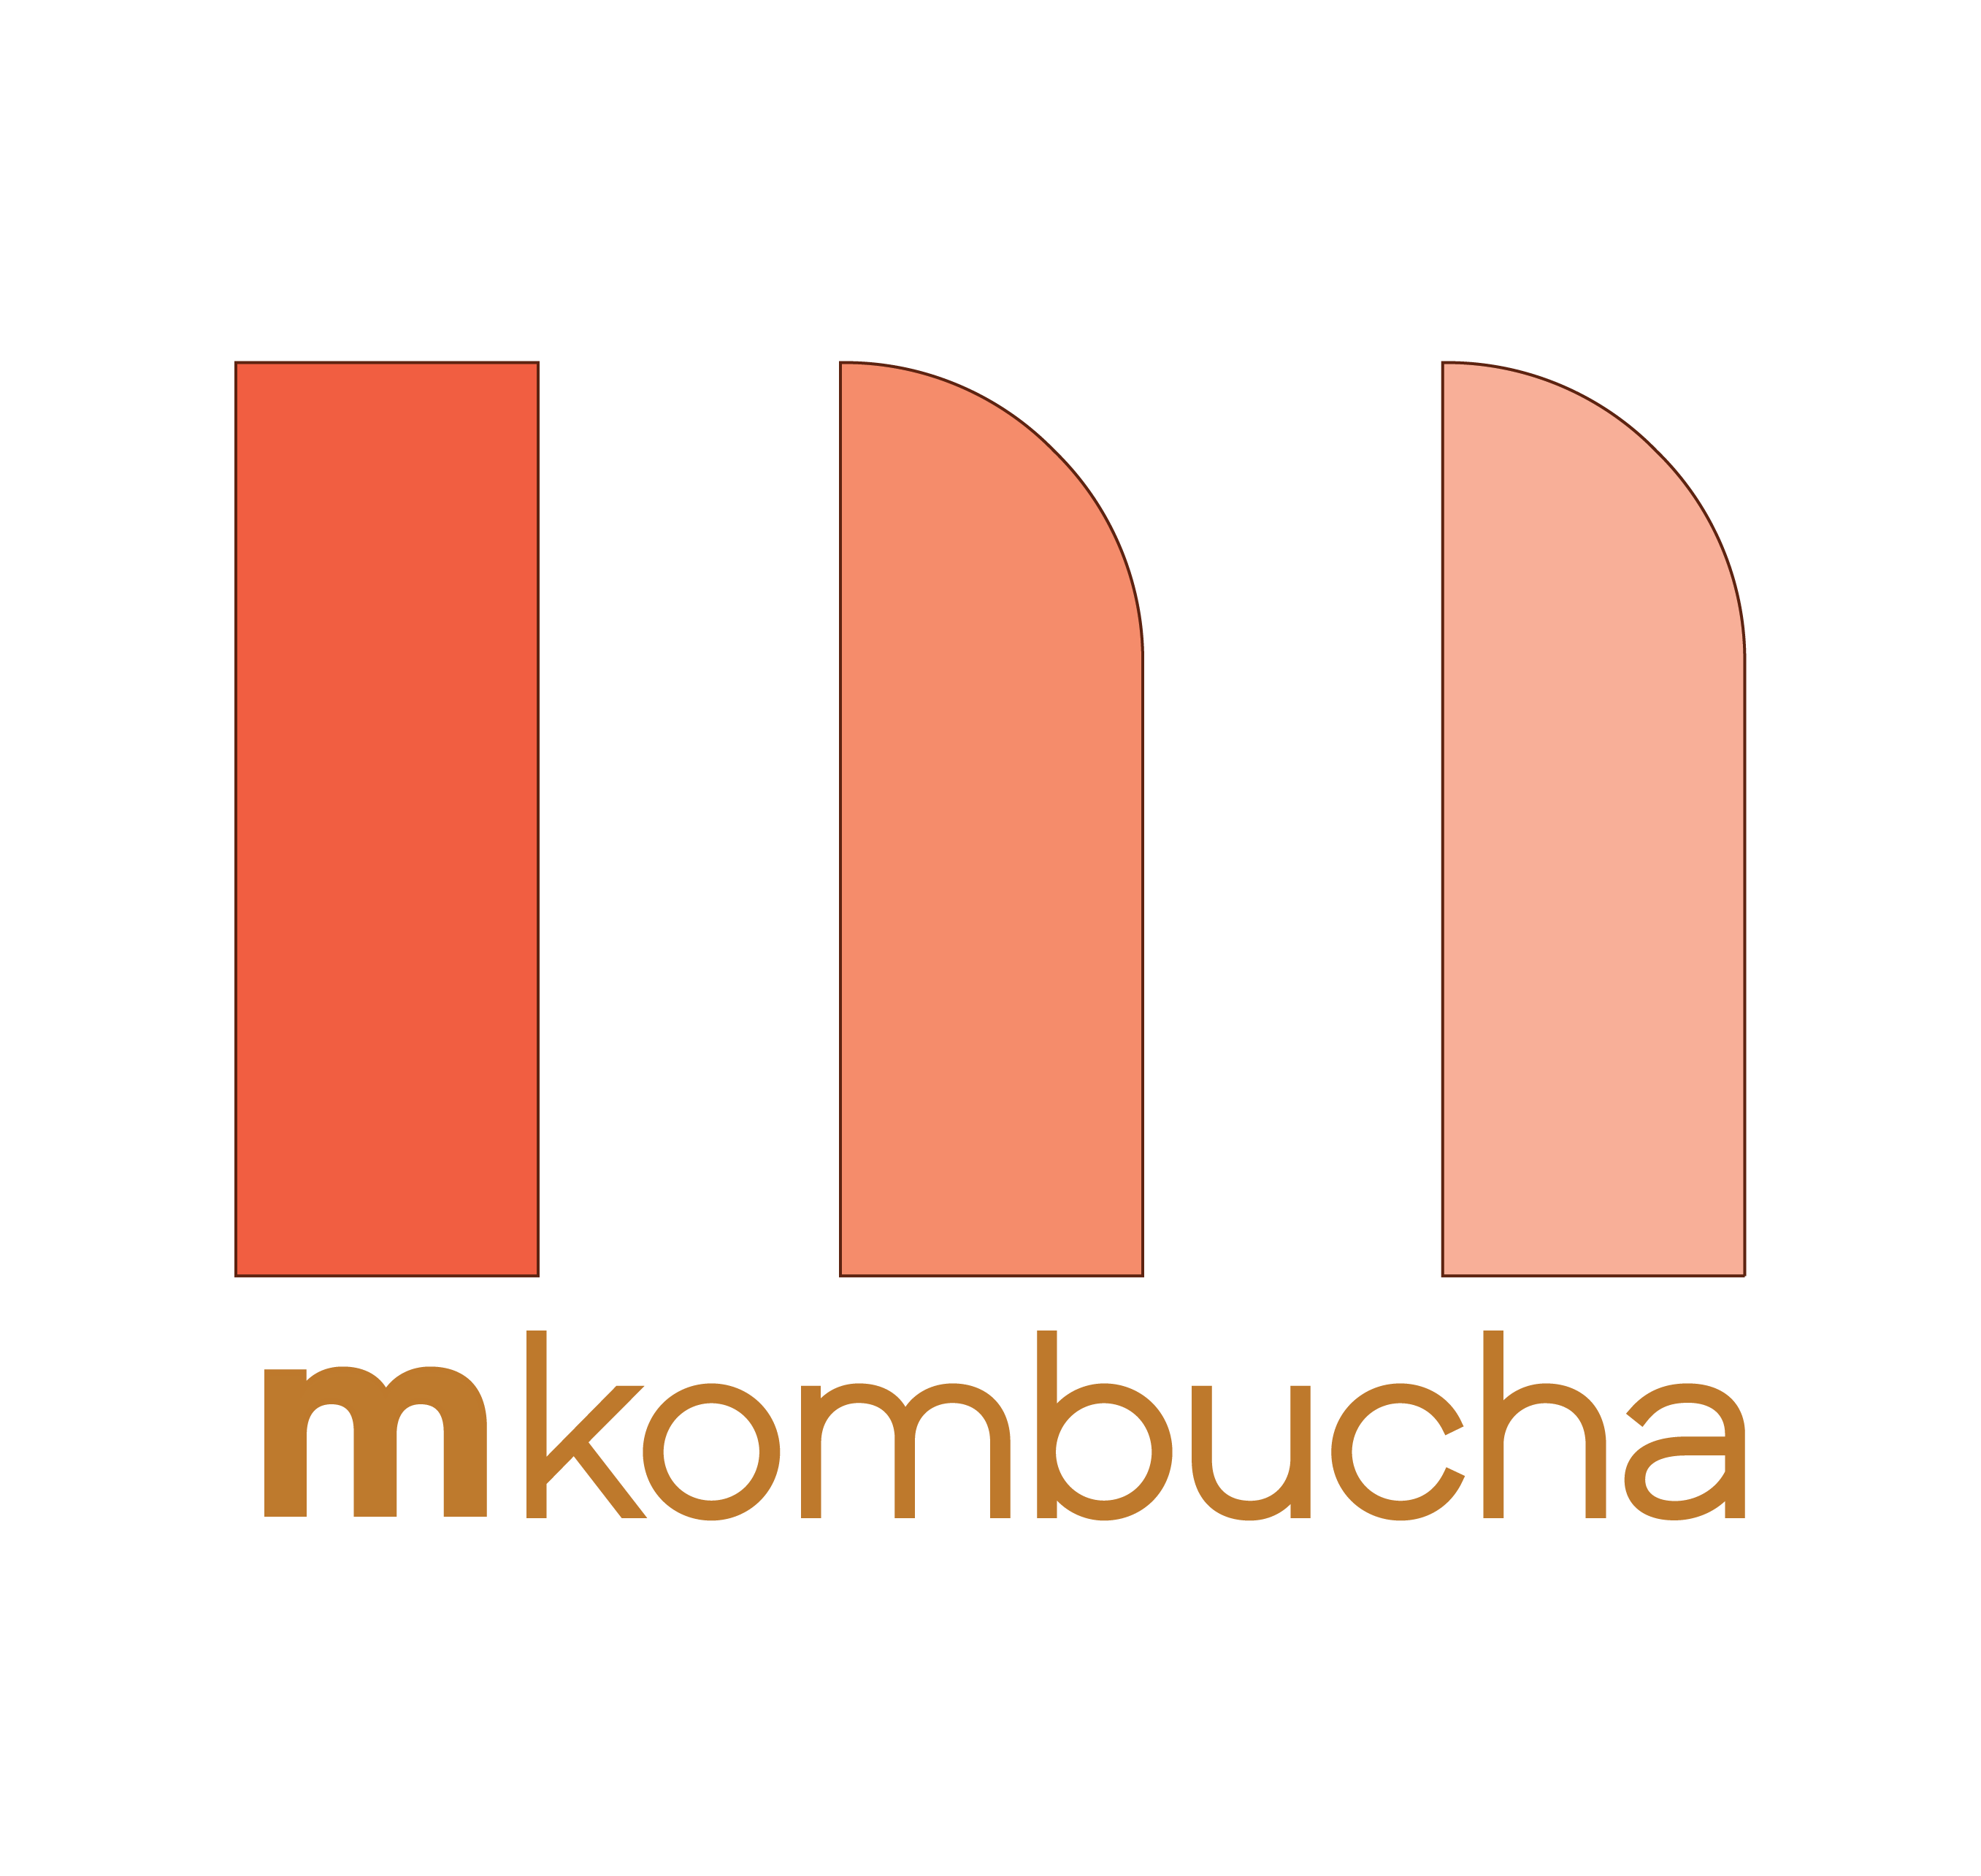 where to buy mkombucha online